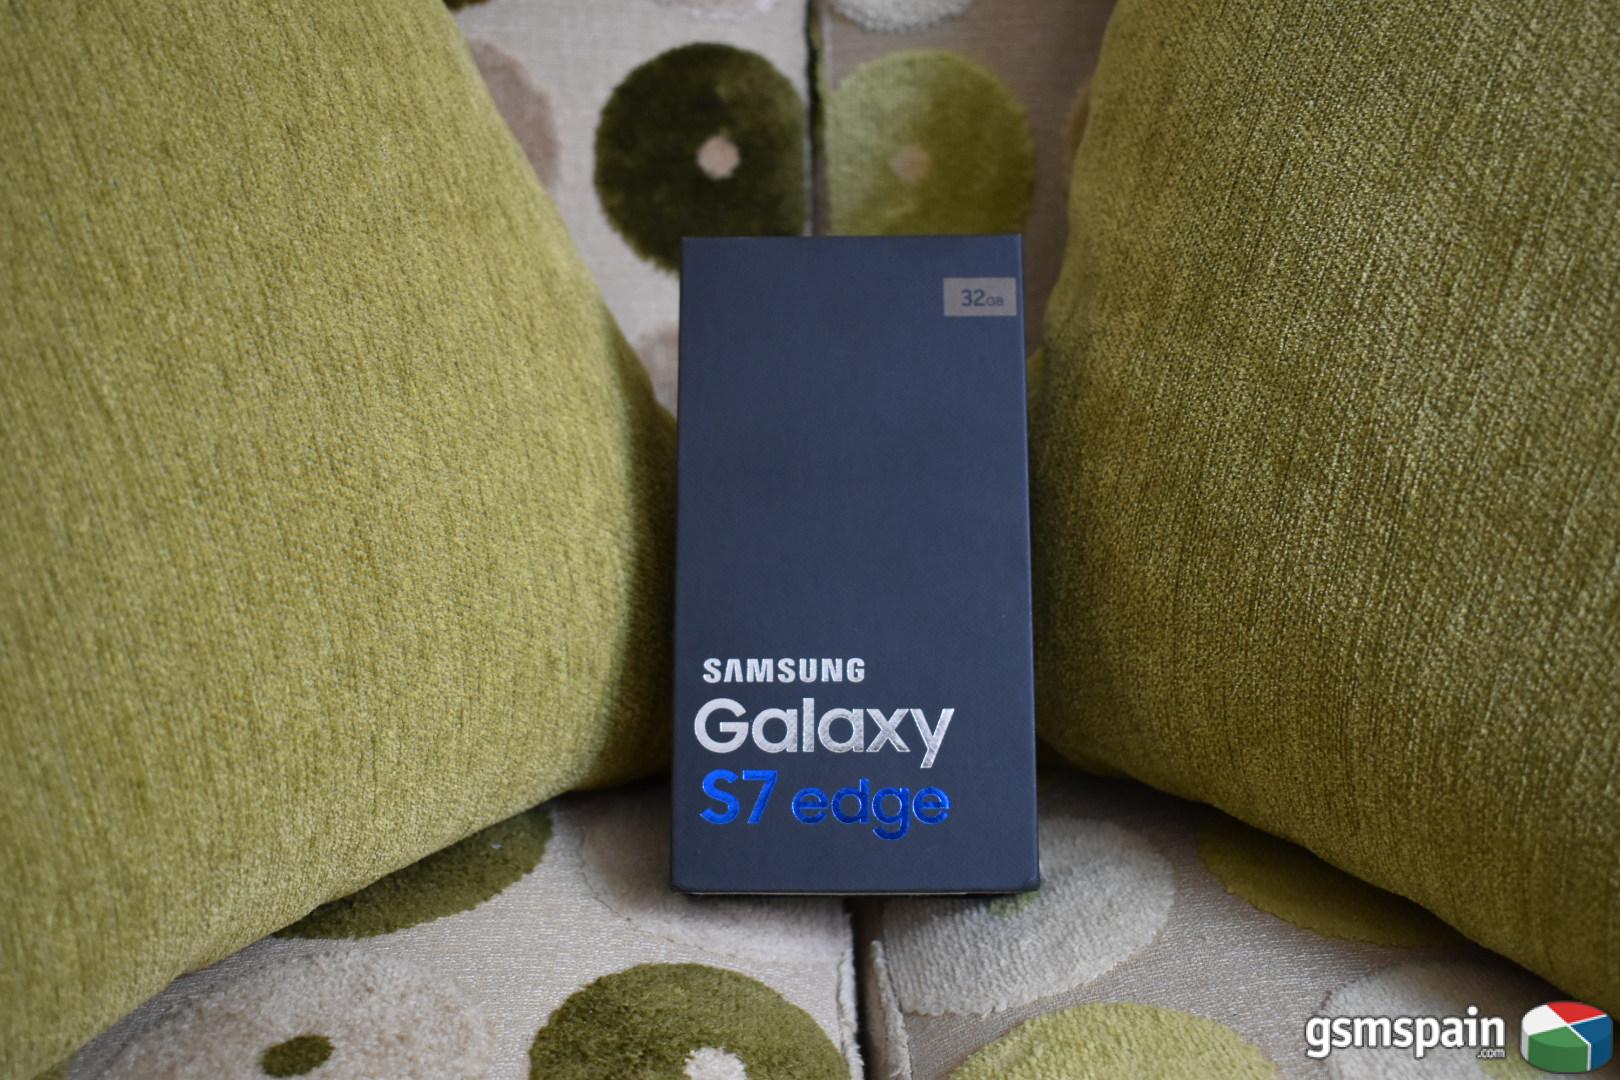 [VENDO] Samsung Galaxy S7 Edge - Gold - Precintado - OFERTA!!! 467 G.I.